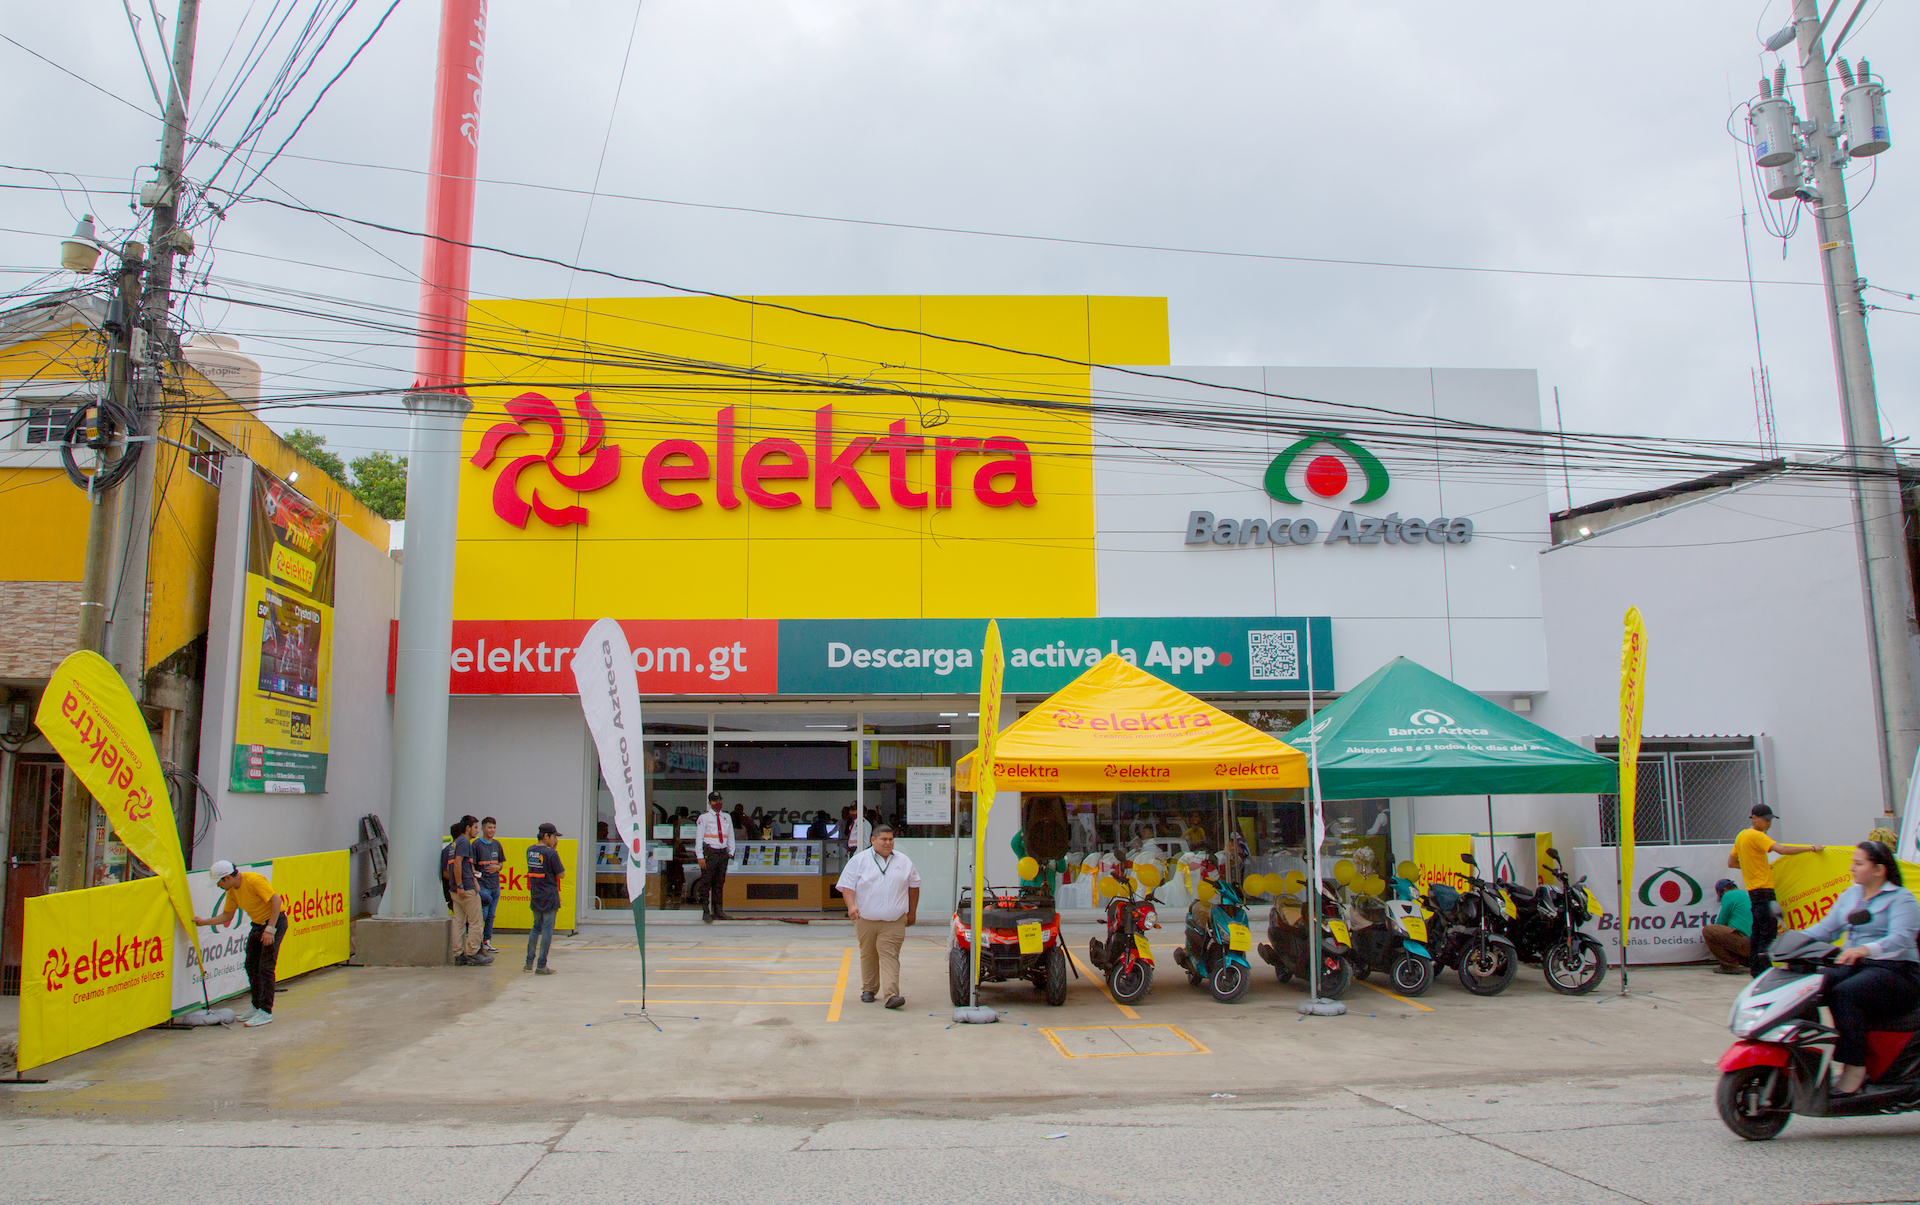 Tiendas Elektra y Banco Azteca inauguran nueva ubicación en Morales, Izabal